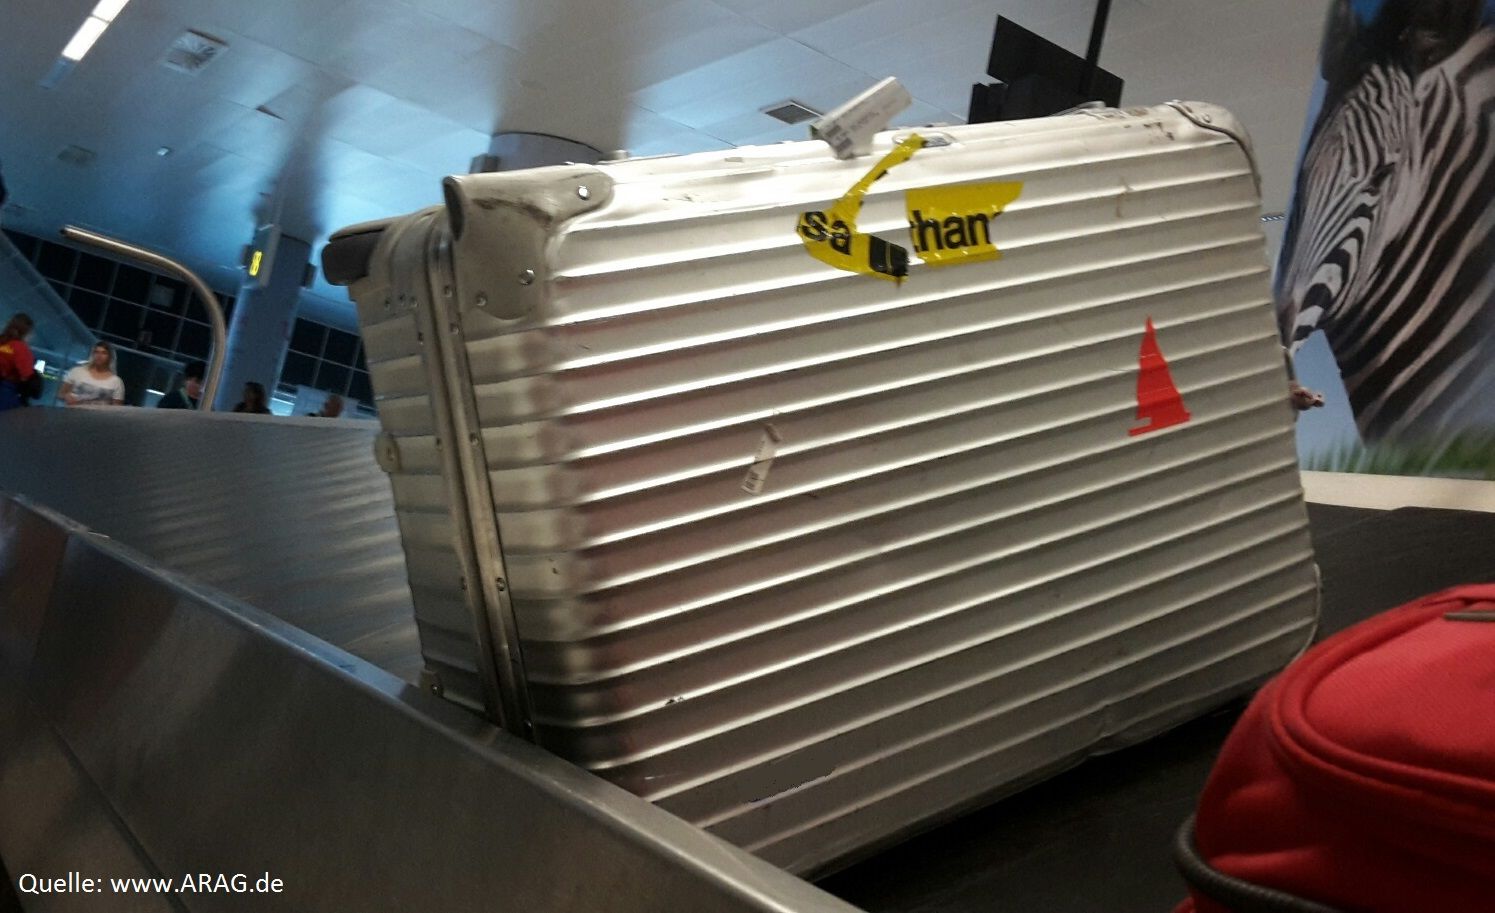 Koffer weg - was nun? Ratgeber zu Gepäckverlust auf Reisen (Foto: Arag)